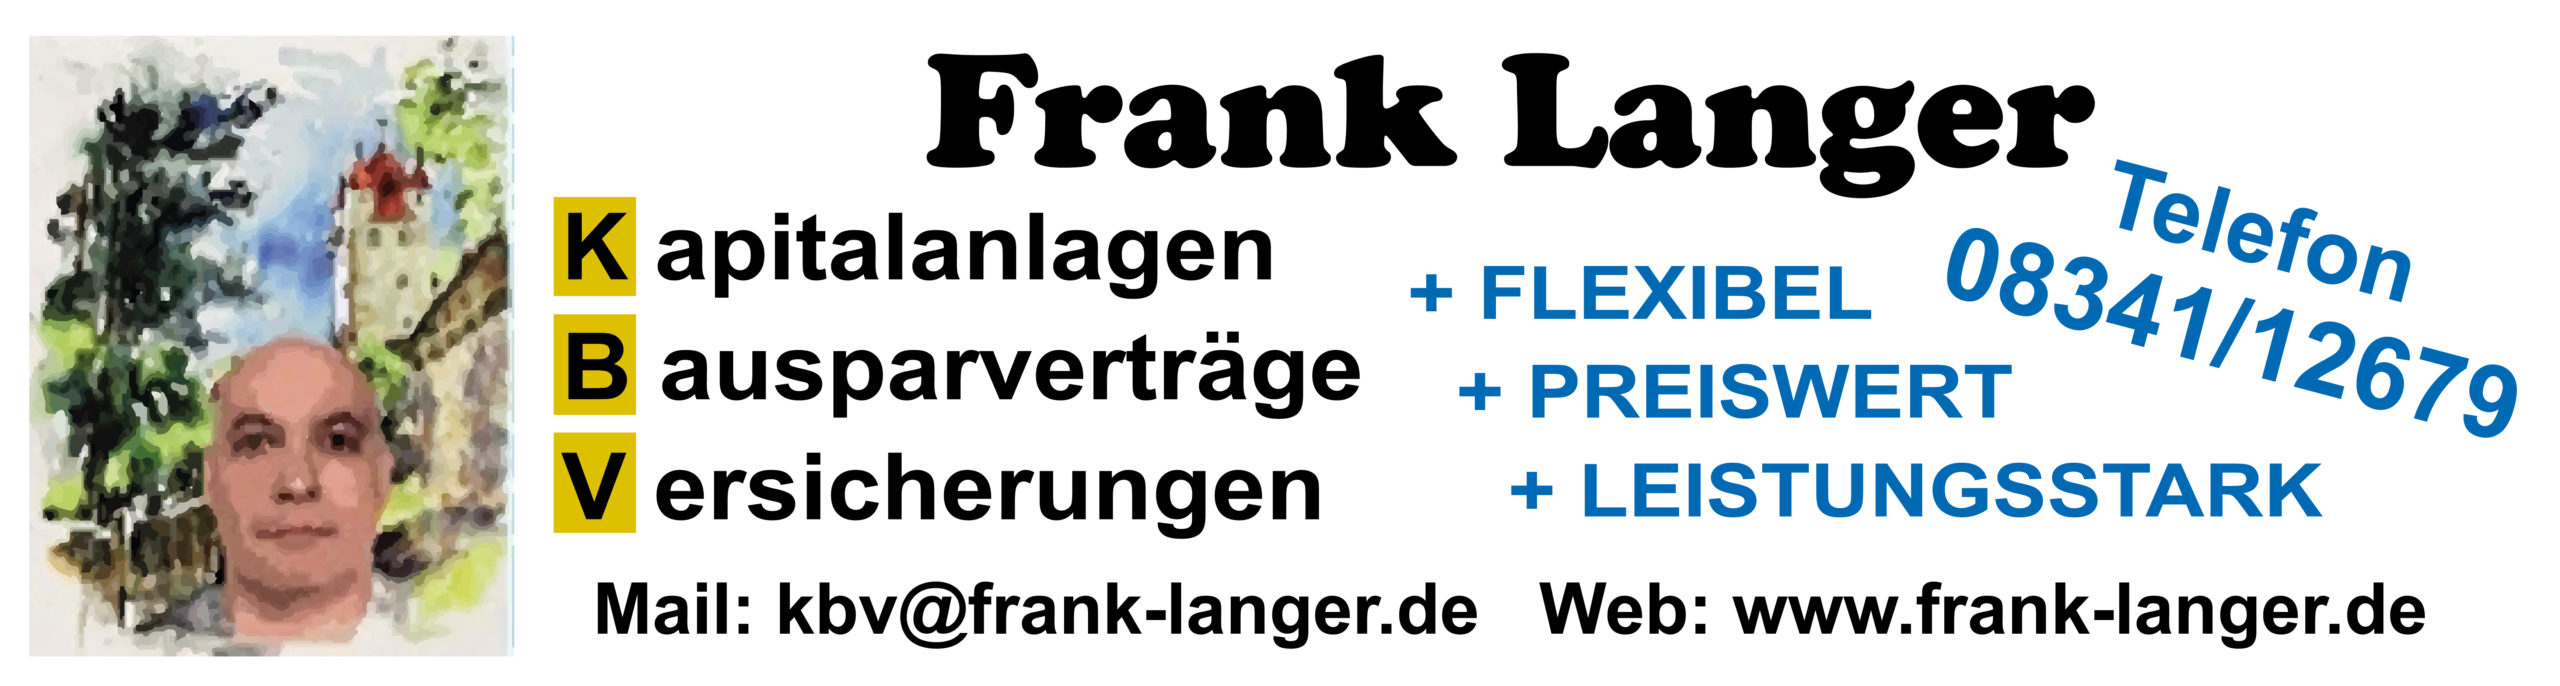 Frank Langer